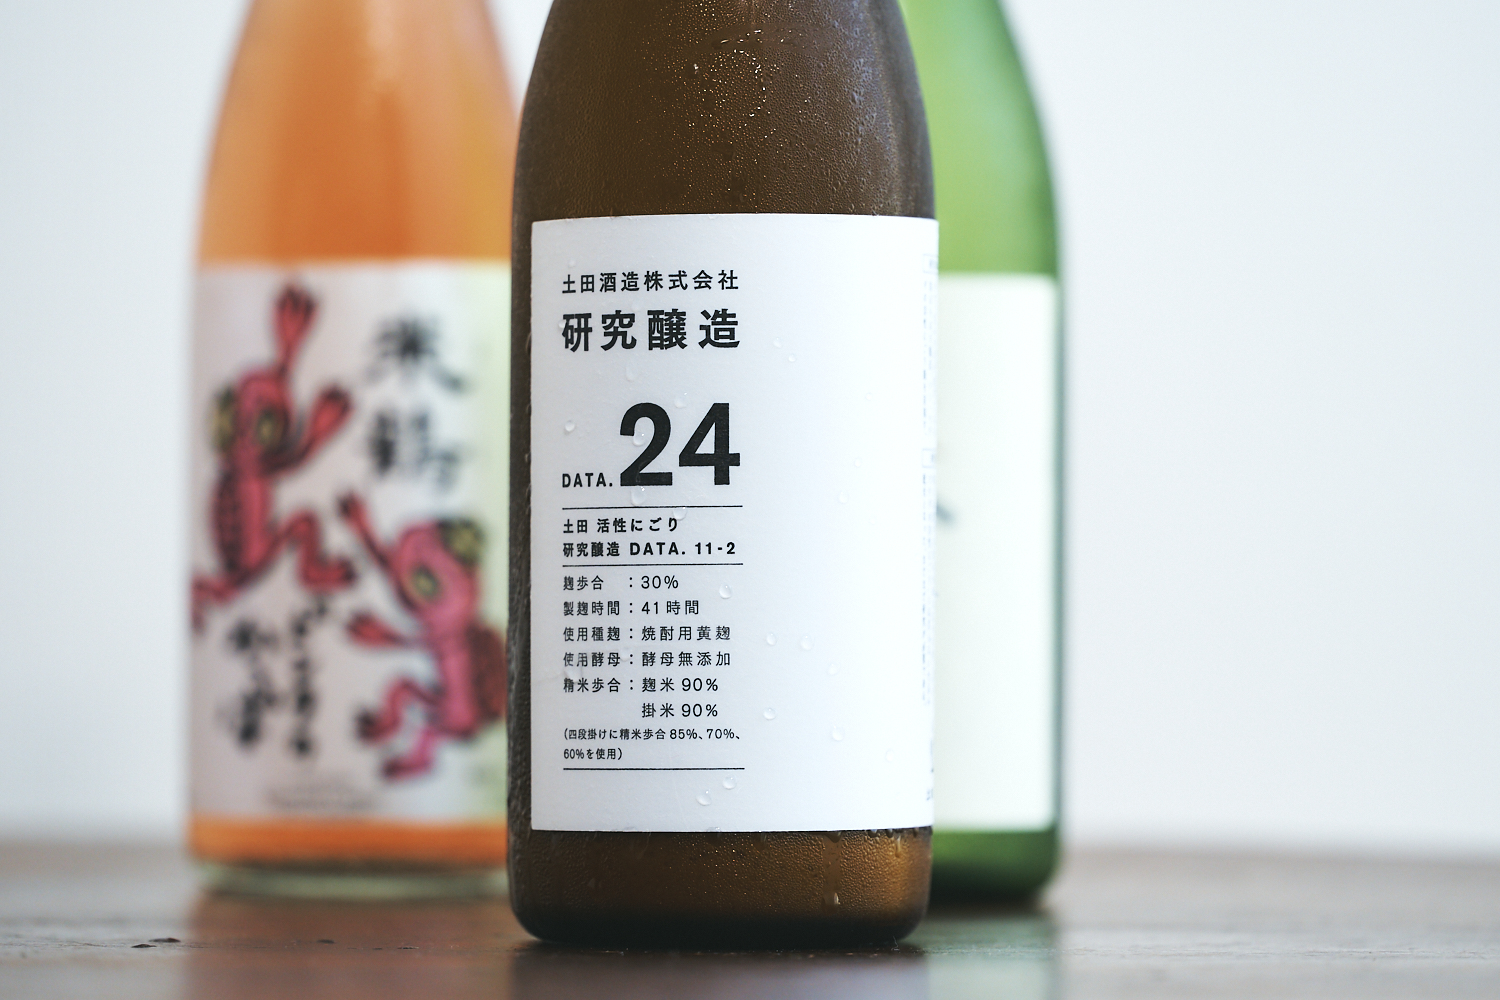 群馬県利根郡川場村にある「土田酒造」は実験的な蔵。日本酒の可能性を広げるユニークな取り組みに目が離せない。この「研究醸造」シリーズは、蔵人たちのあくなき探究心から生まれたもの。「土田 研究醸造 24 活性にごり生酒」720ml 2,750円（ひいな購入時価格）／土田酒造株式会社